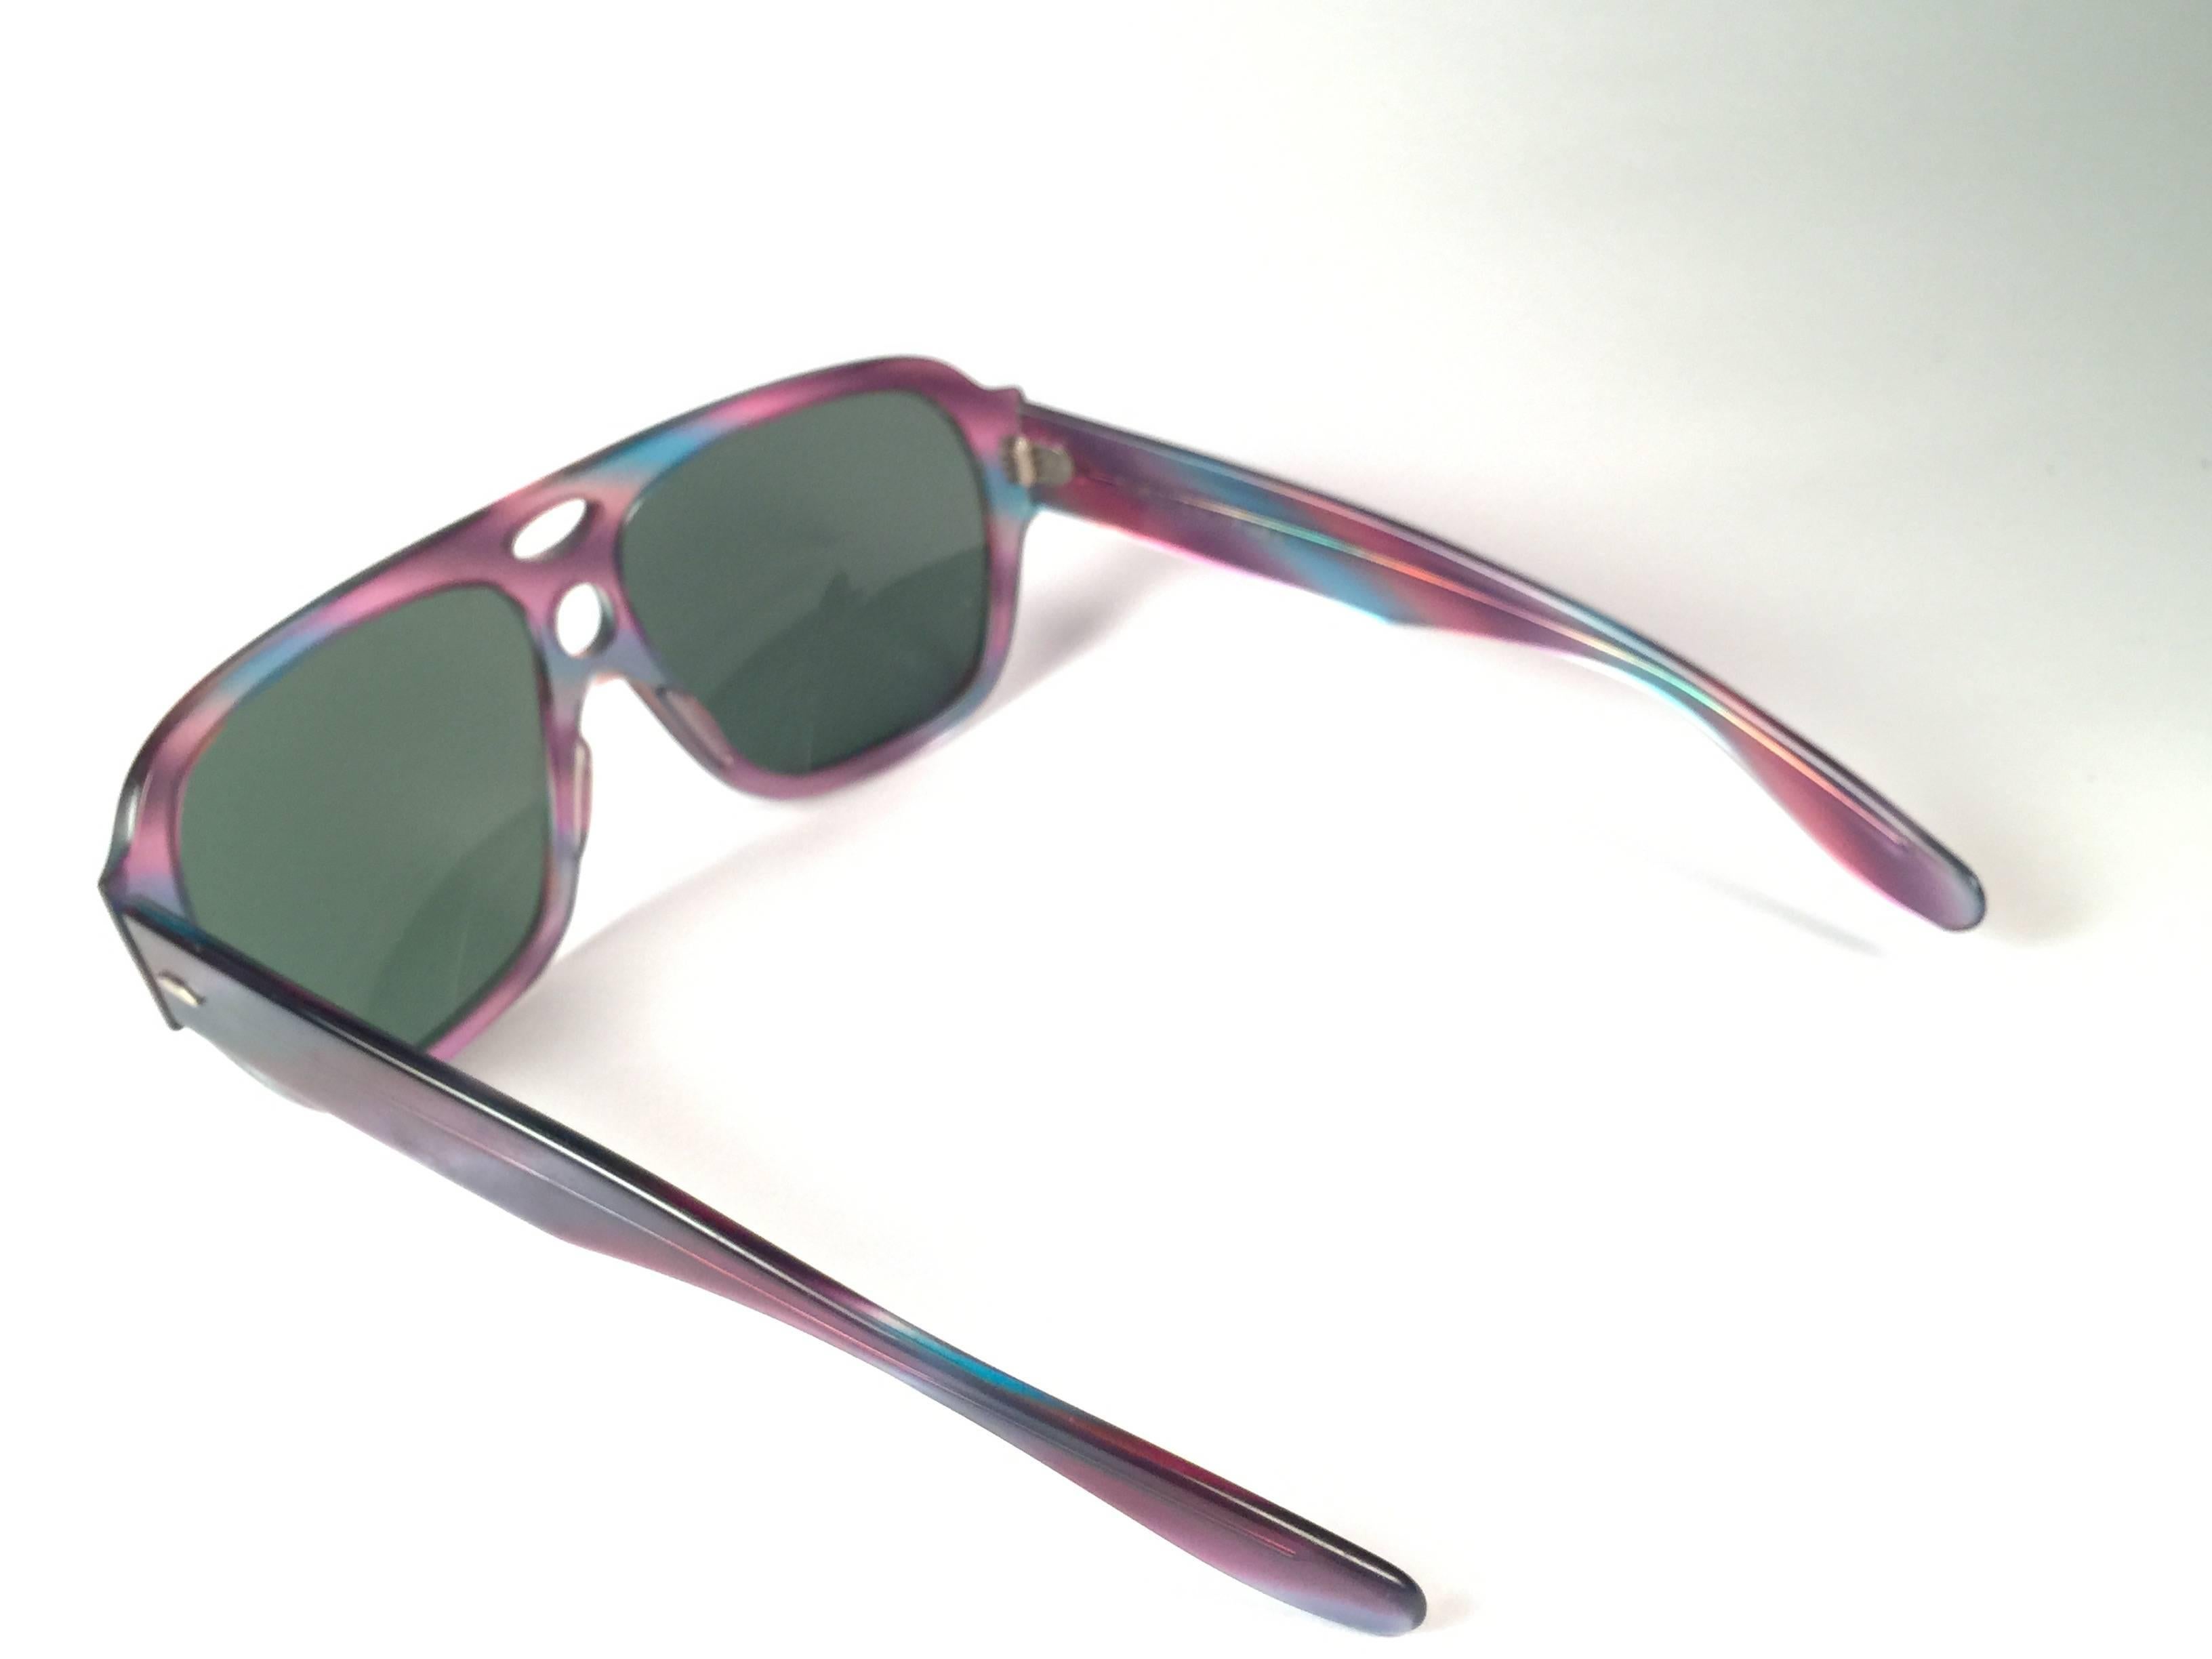 ray ban multicolor sunglasses